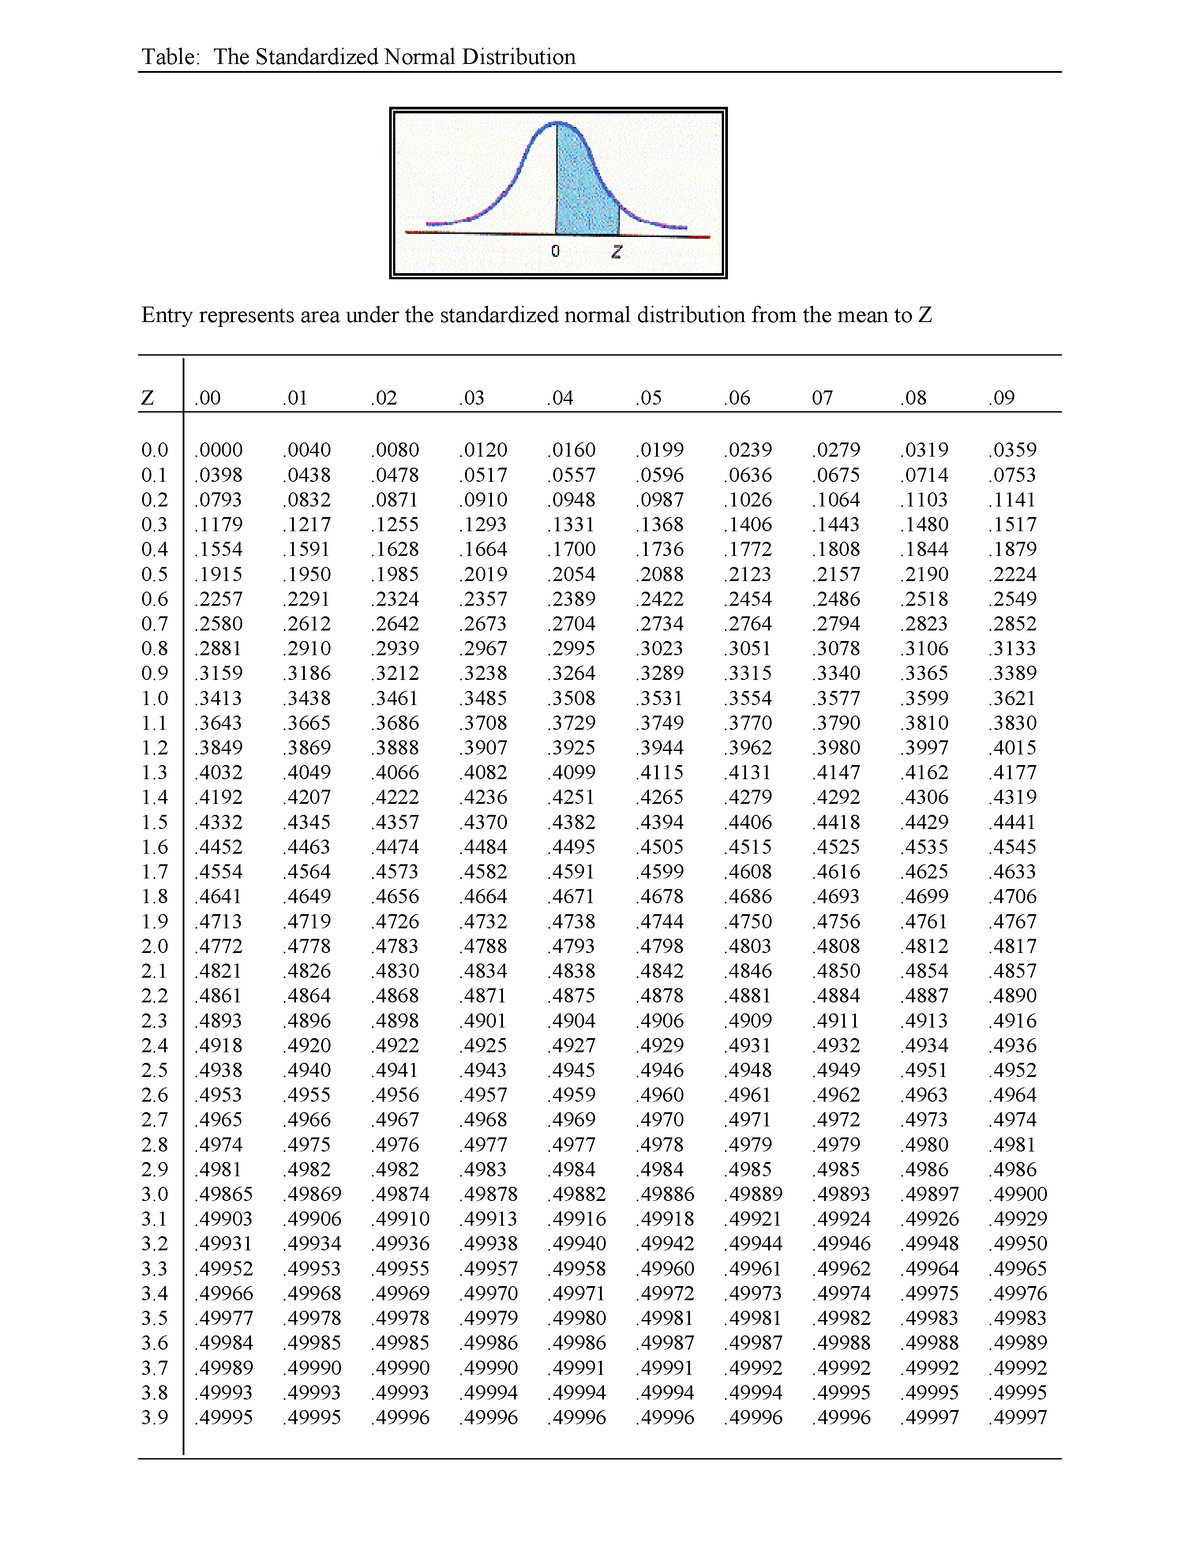 standard normal distribution table vs z score